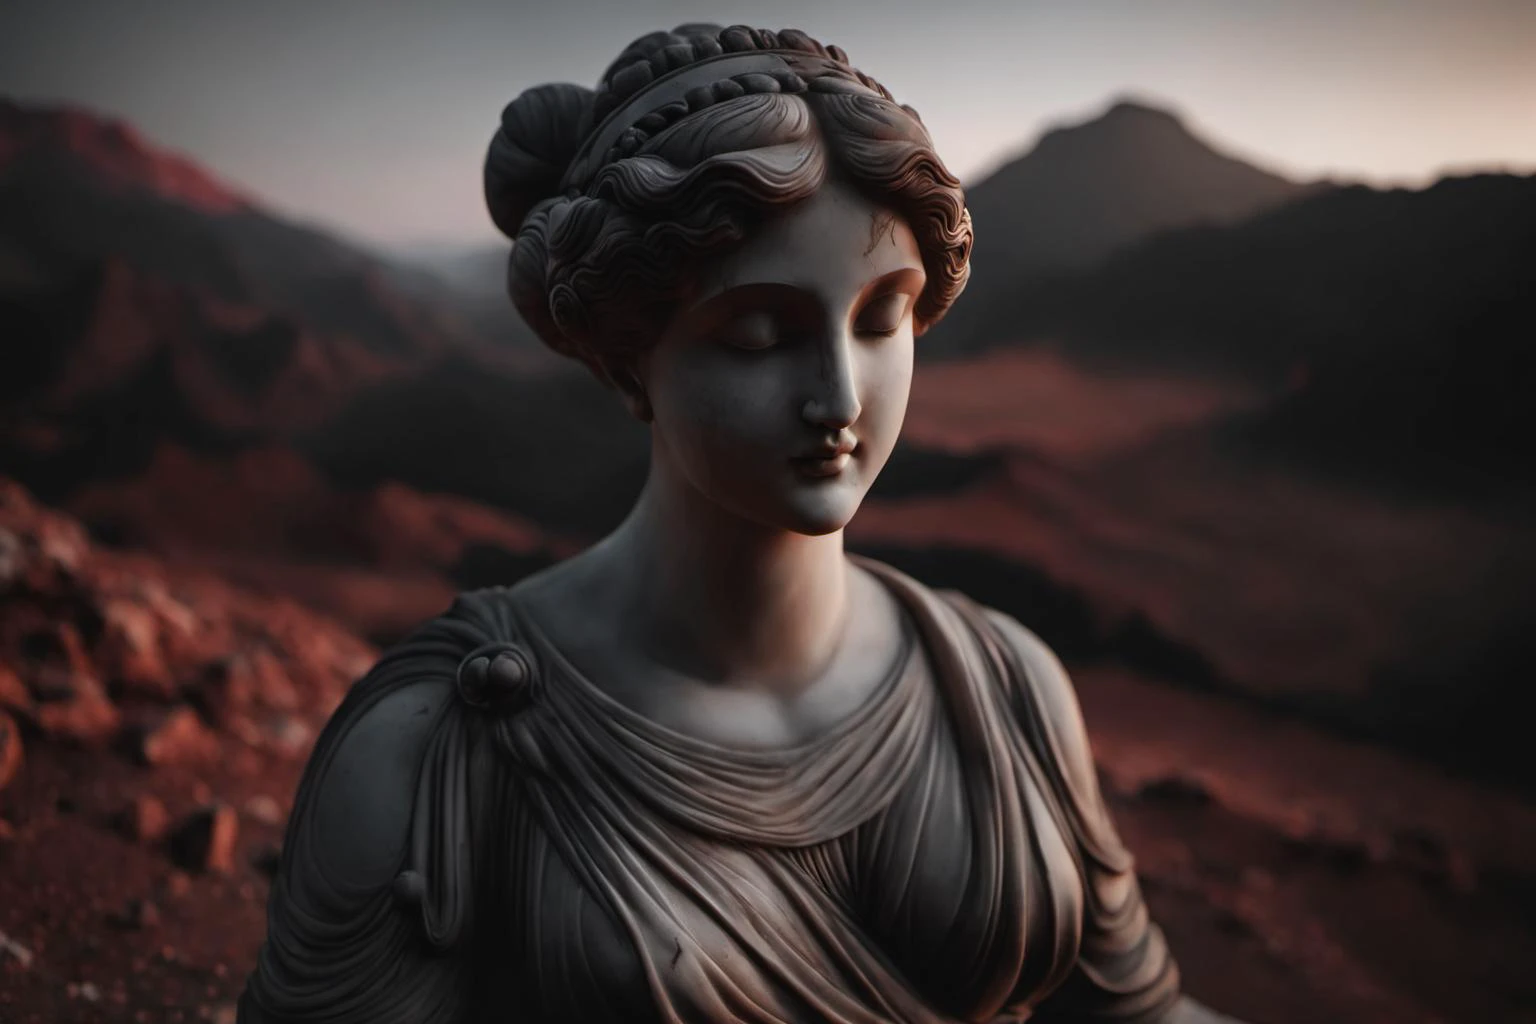 ヴィーナス・プディカの中間ショット写真, 暗い大理石で作られた彫像, 火星を背景に彼女の胴体と顔を撮影. 薄暗い光が彼女の体の複雑な細部を際立たせている, 背景には赤い火星の地形が見える., 映画のような, 富士フイルム, RTTX 10.0, ボケ